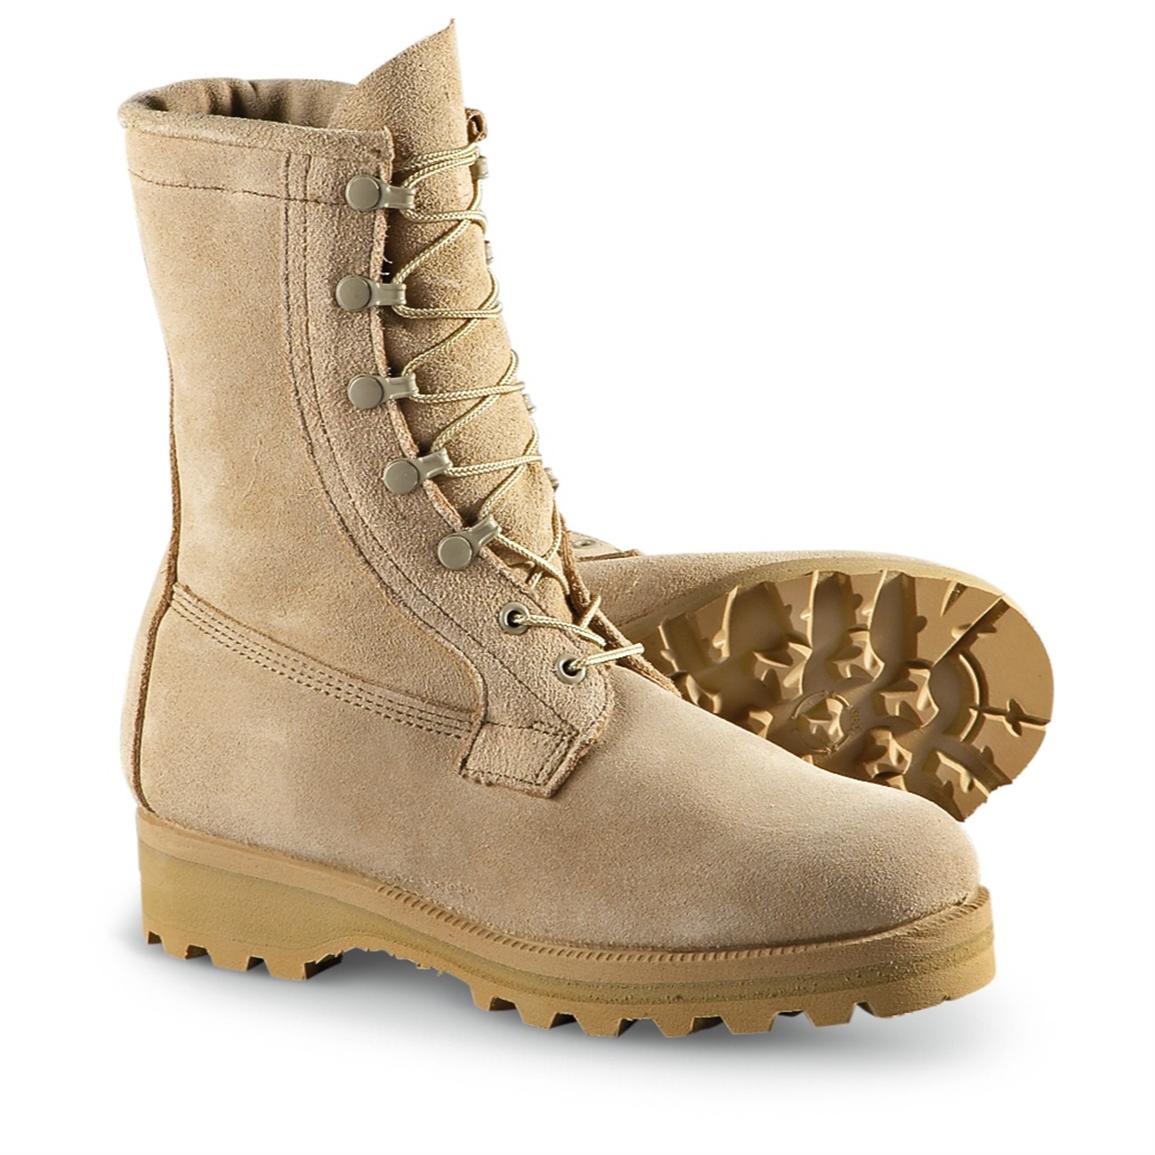 Men's Wellco® GORE - TEX® ICW Duty Boots, Tan - 202724, Combat ...